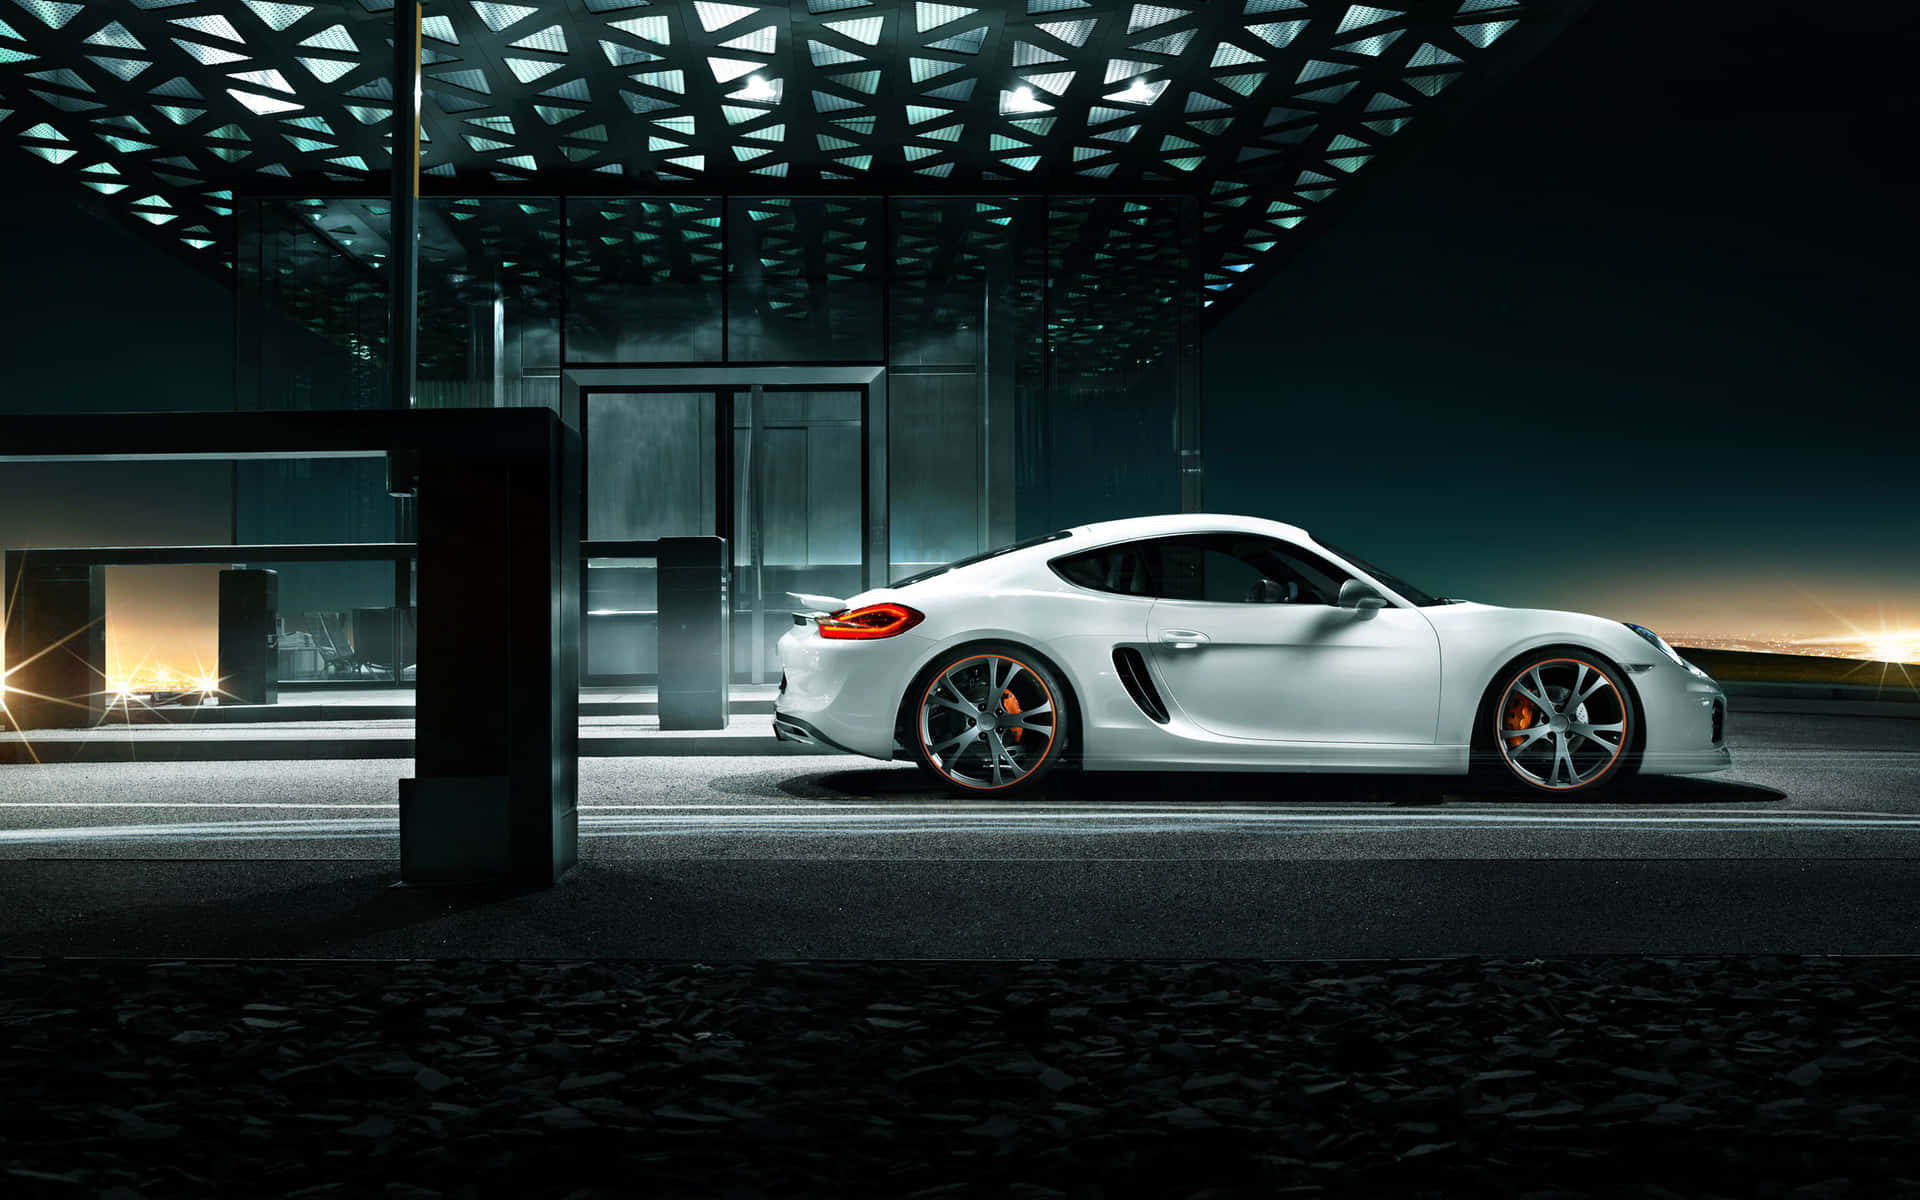 Porsche2560 X 1600 Hintergrundbild